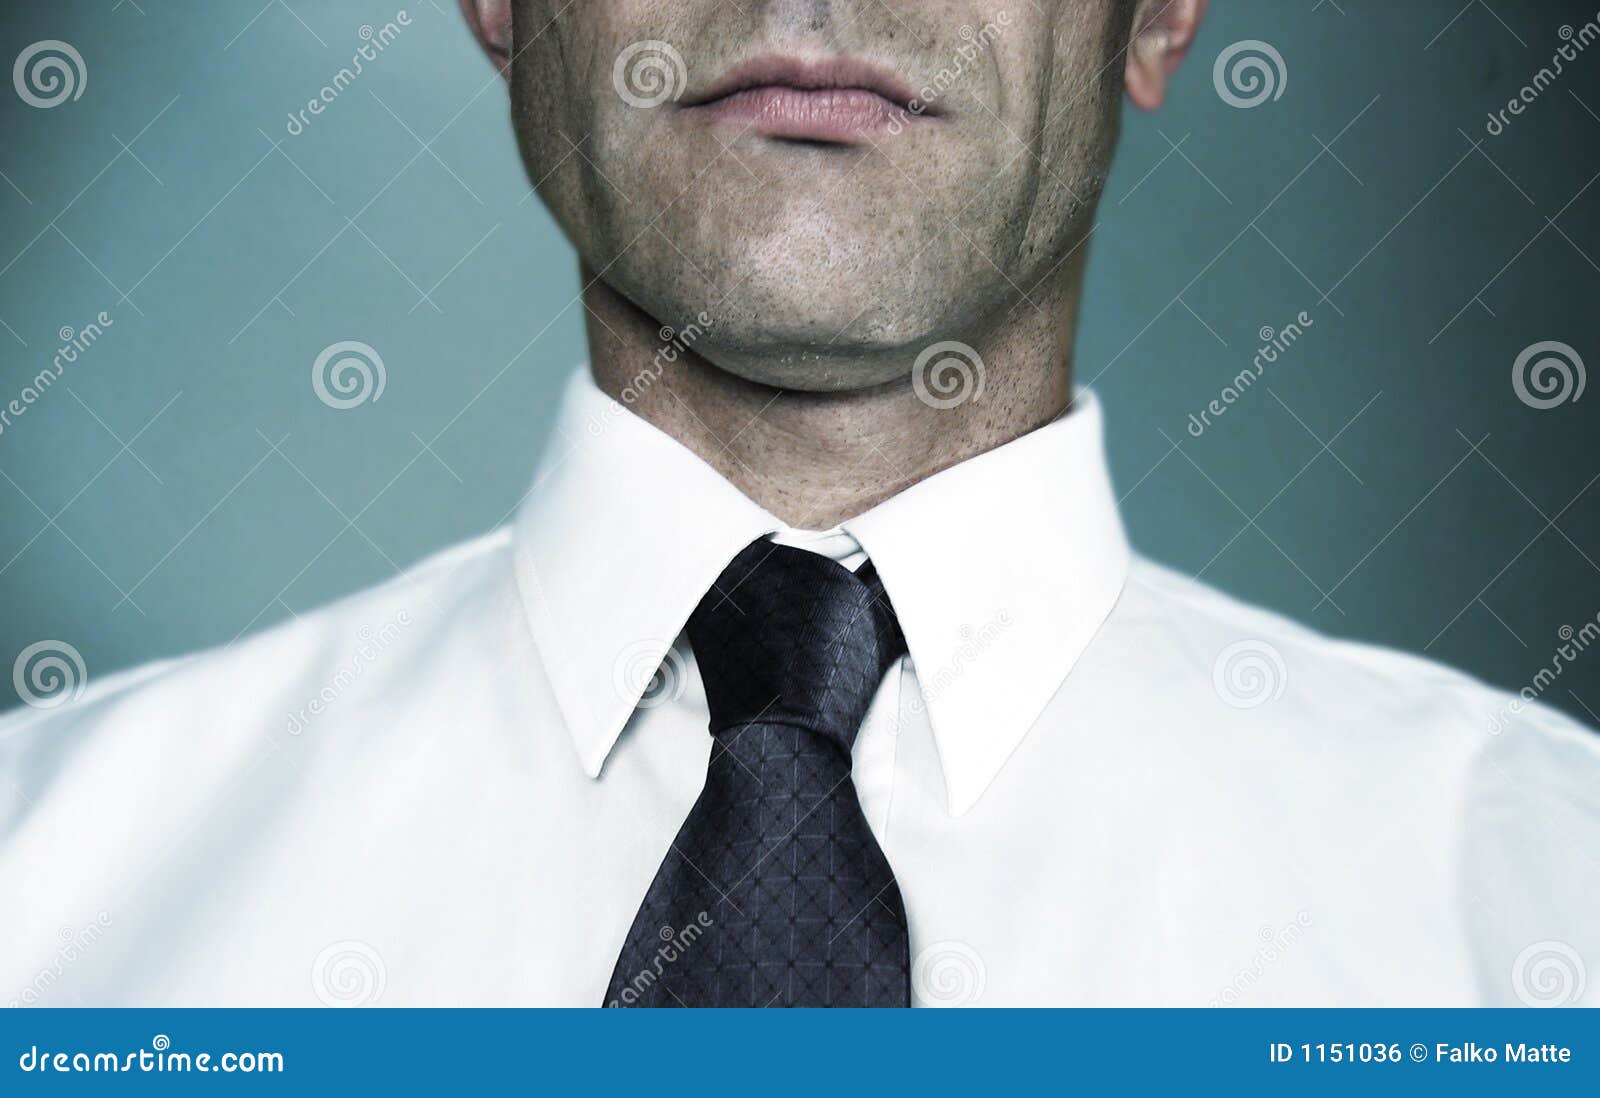 blue shirt white collar tie